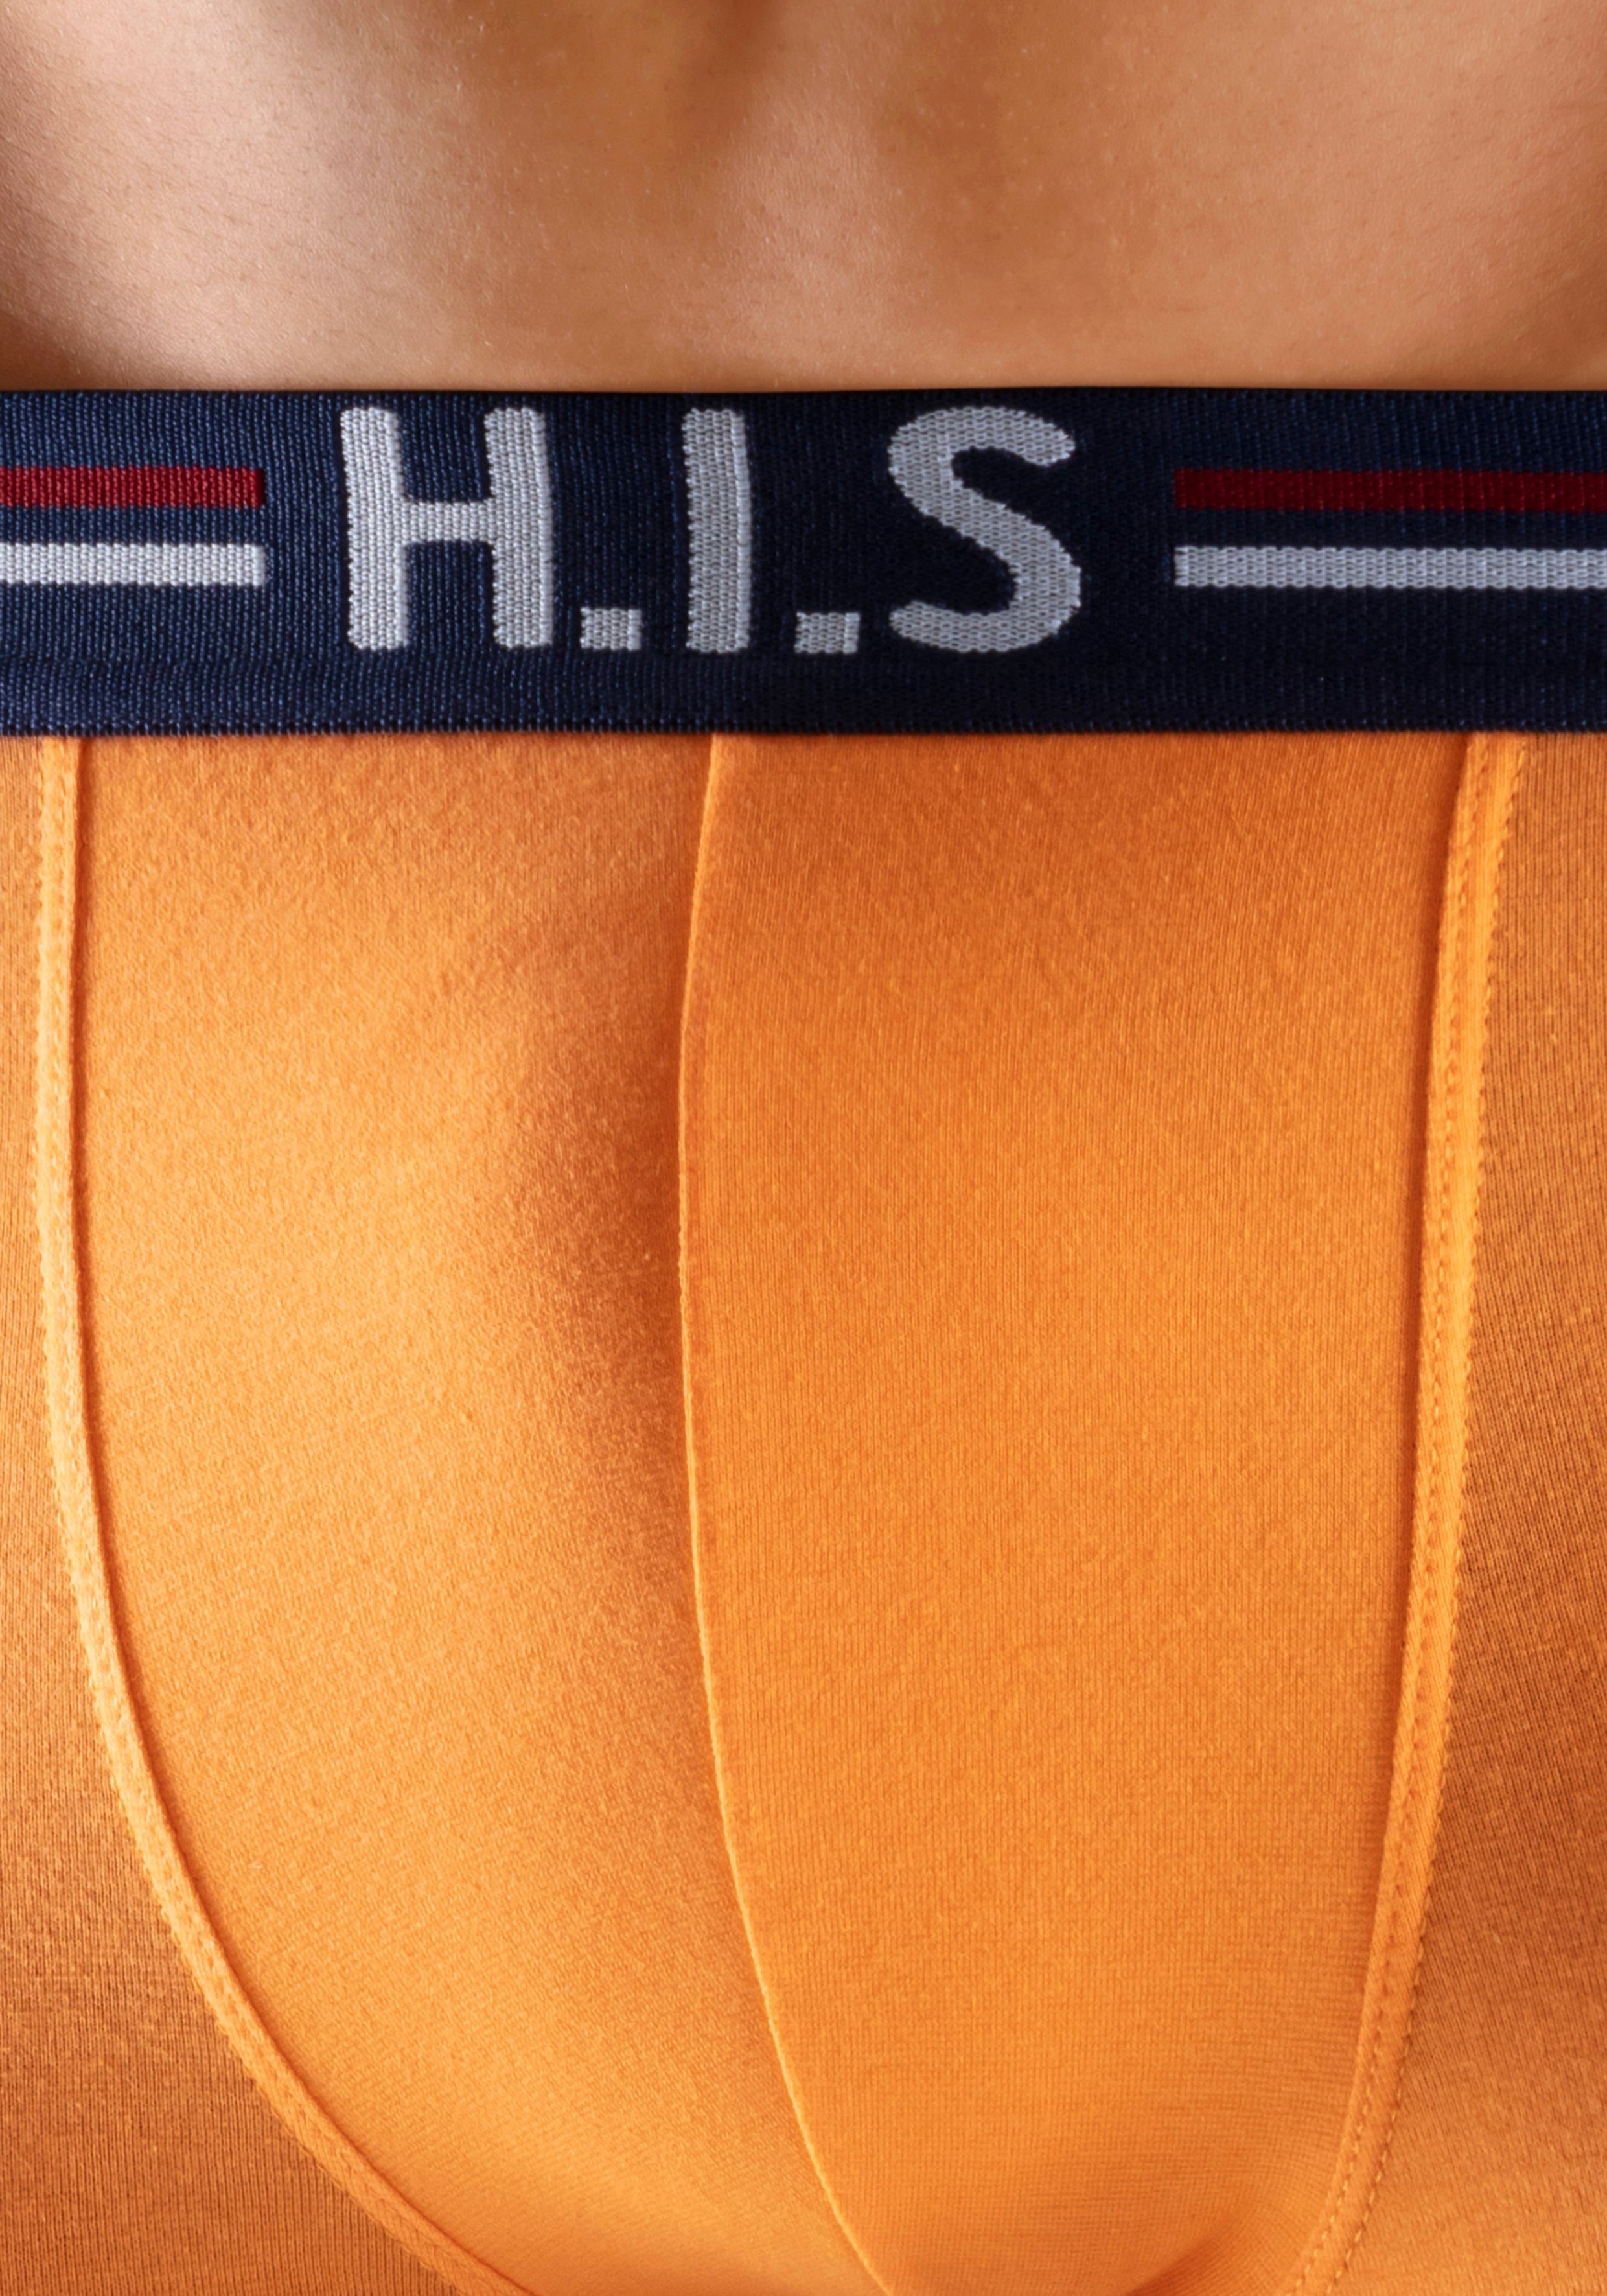 Markenlogo Hipster-Form orange, 5-St) Boxershorts und H.I.S navy, im Streifen mint, in mit schwarz (Packung, Bund grau-meliert,